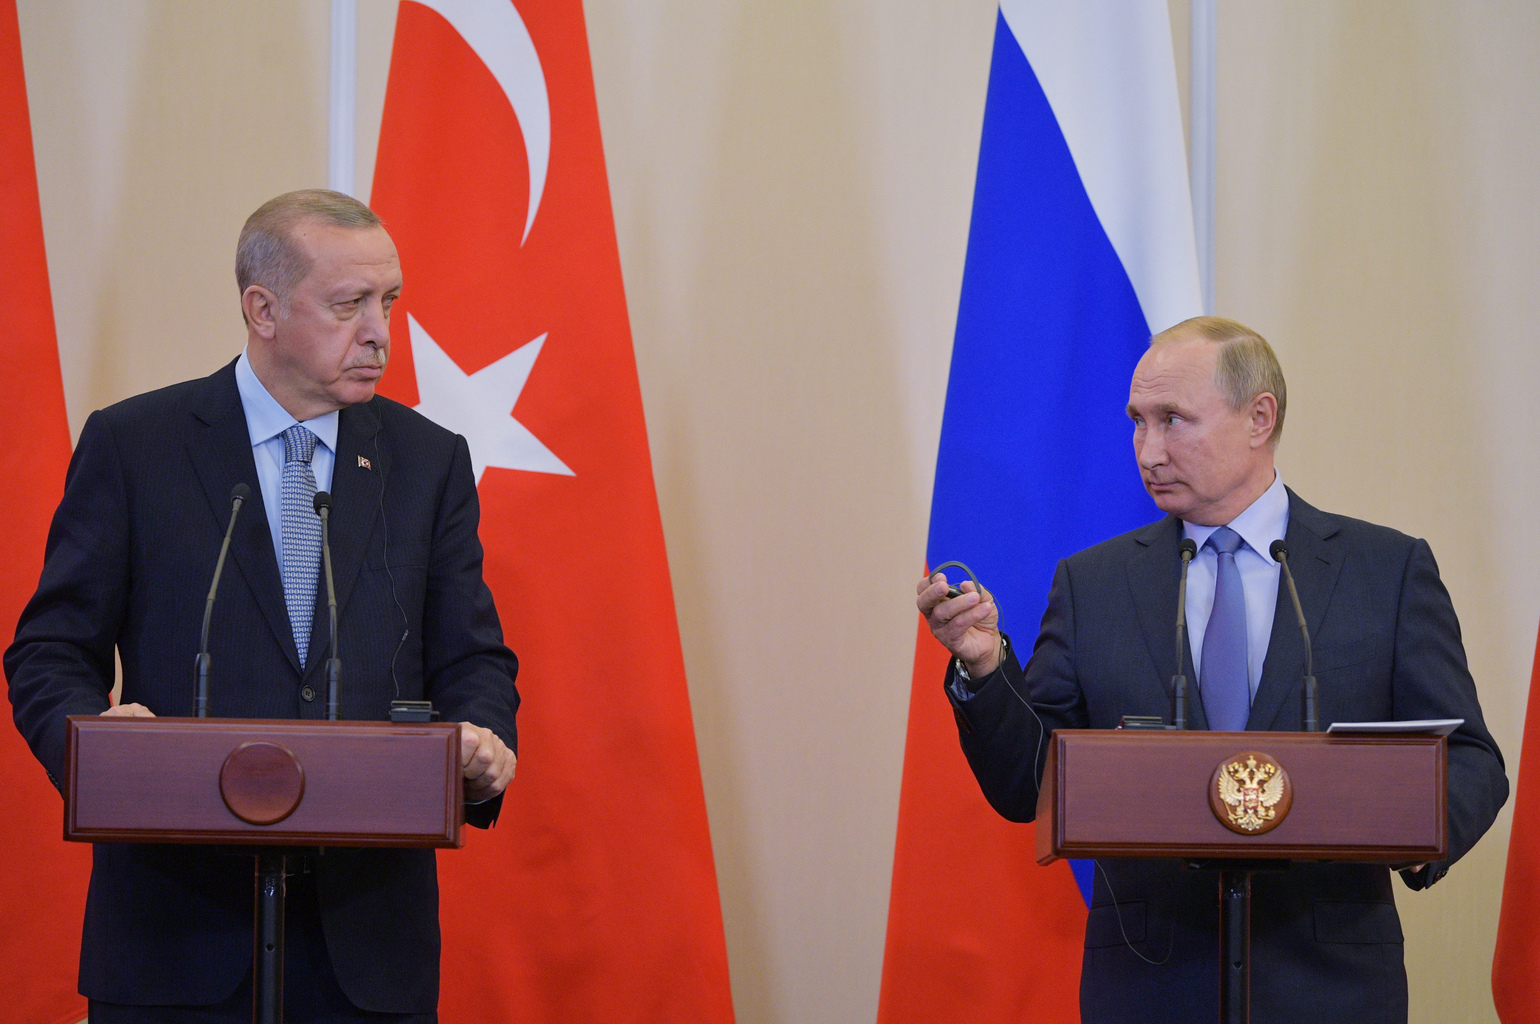 Recep Tayyip Erdoğan és Vlagyimir Putyin sajtótájékoztatója Szocsiban 2019. október 22-én #moszkvater